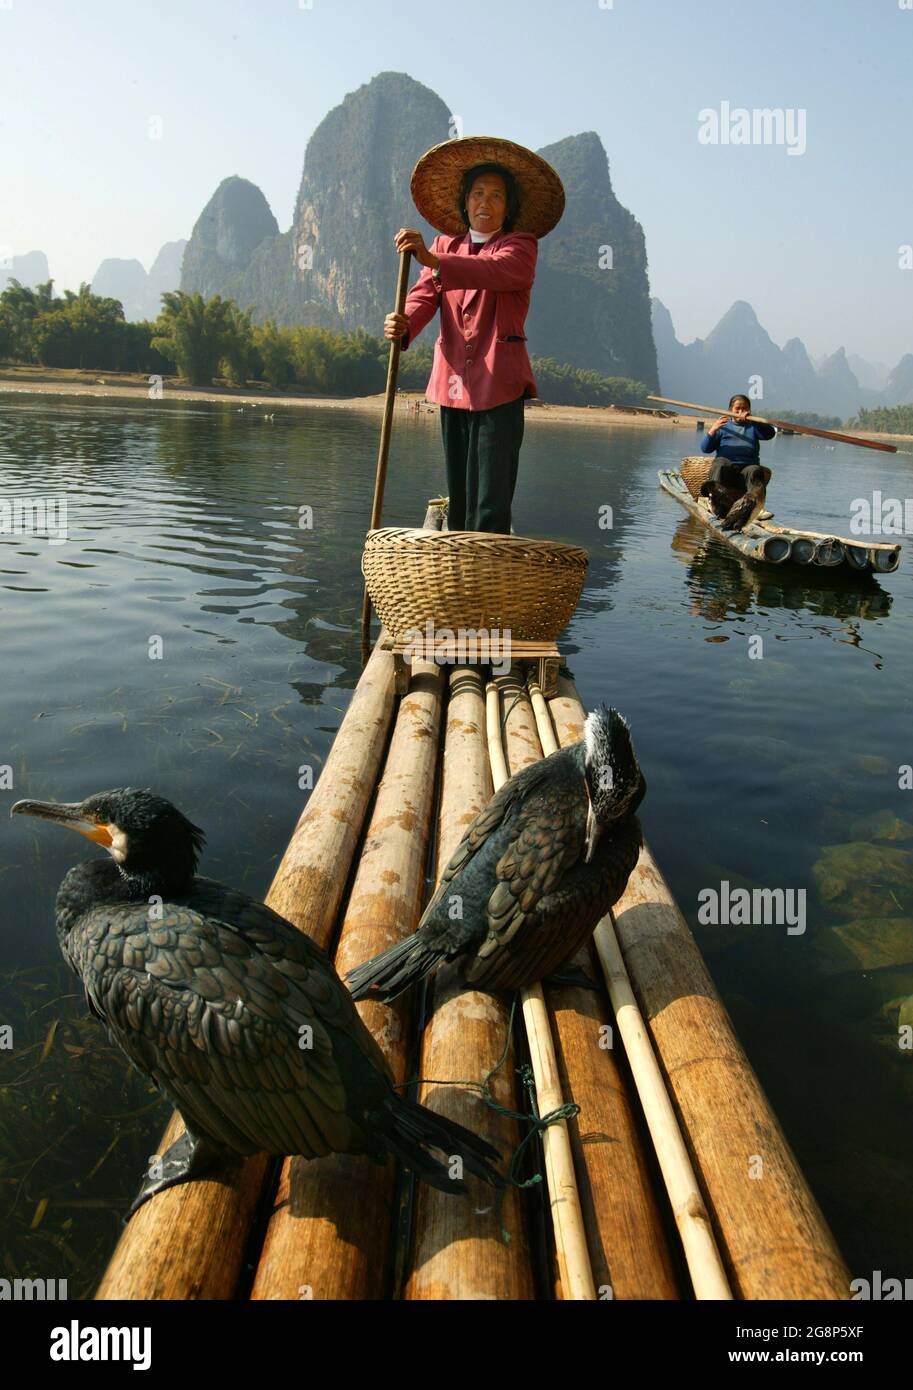 Die kormoranischen Fischerfrauen sind die Touristenattraktion am Fluss Li, Xingping, China, Ostasien Stockfoto